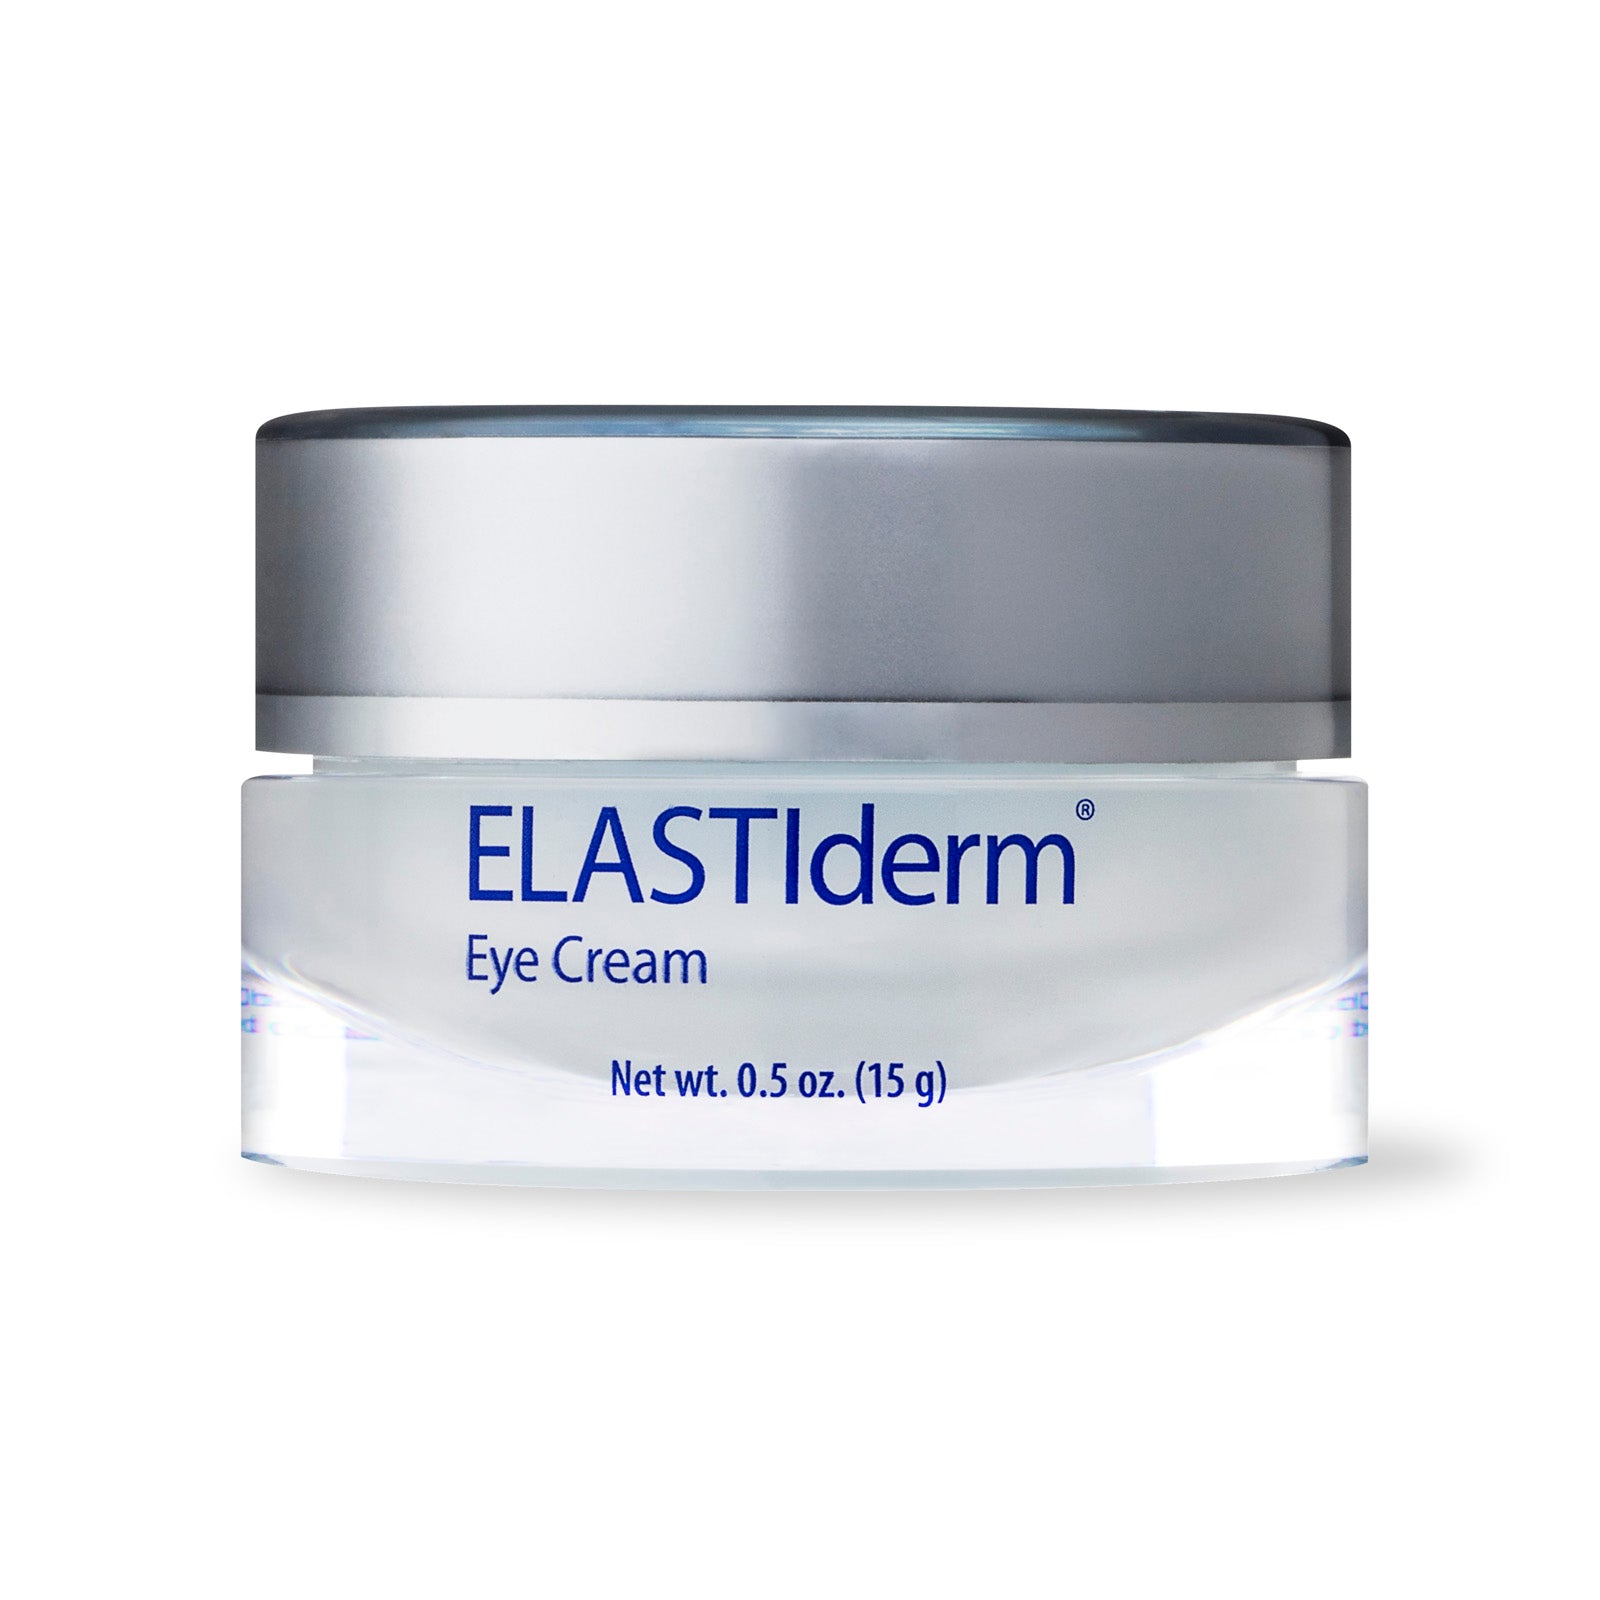 ELASTIderm Eye Cream 0.5 oz, Rejuvenating Eye Cream - Beauty By Vianna